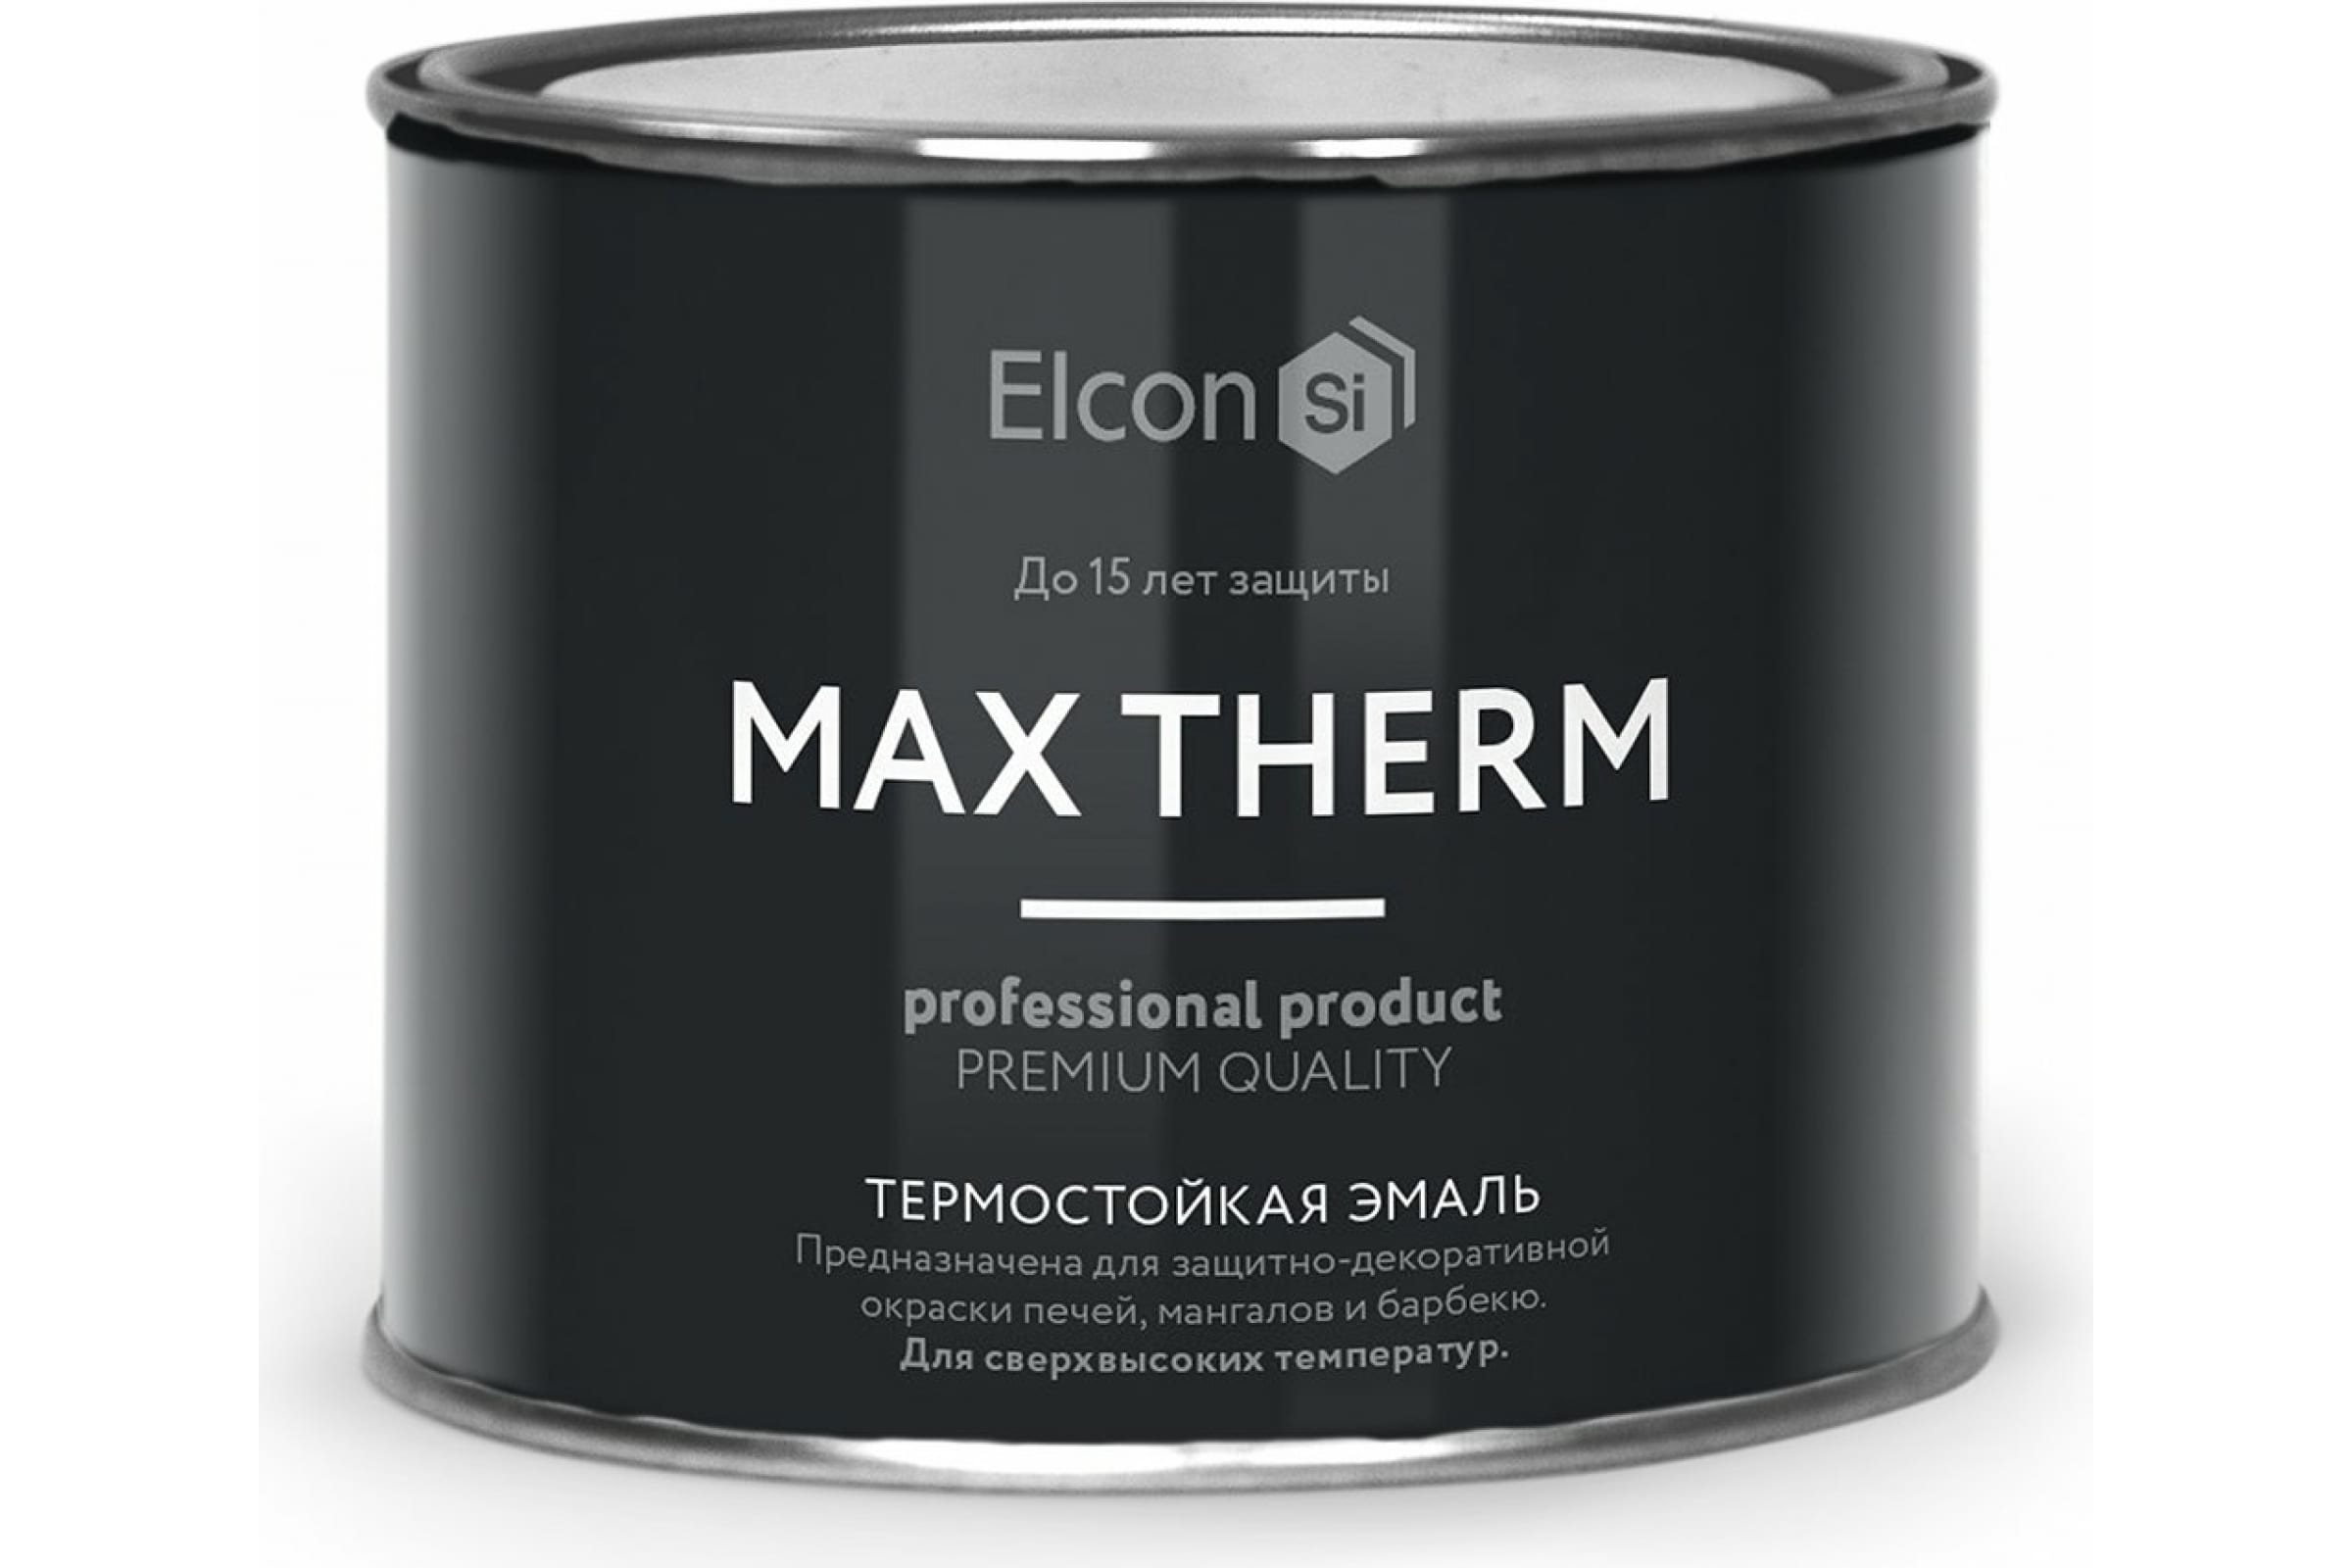 Термостойкая антикоррозионная эмаль Elcon Max Therm до 700 градусов, 0,4 л, зеленая термостойкая антикоррозионная эмаль elcon max therm до 700 градусов 0 4 л серебристая